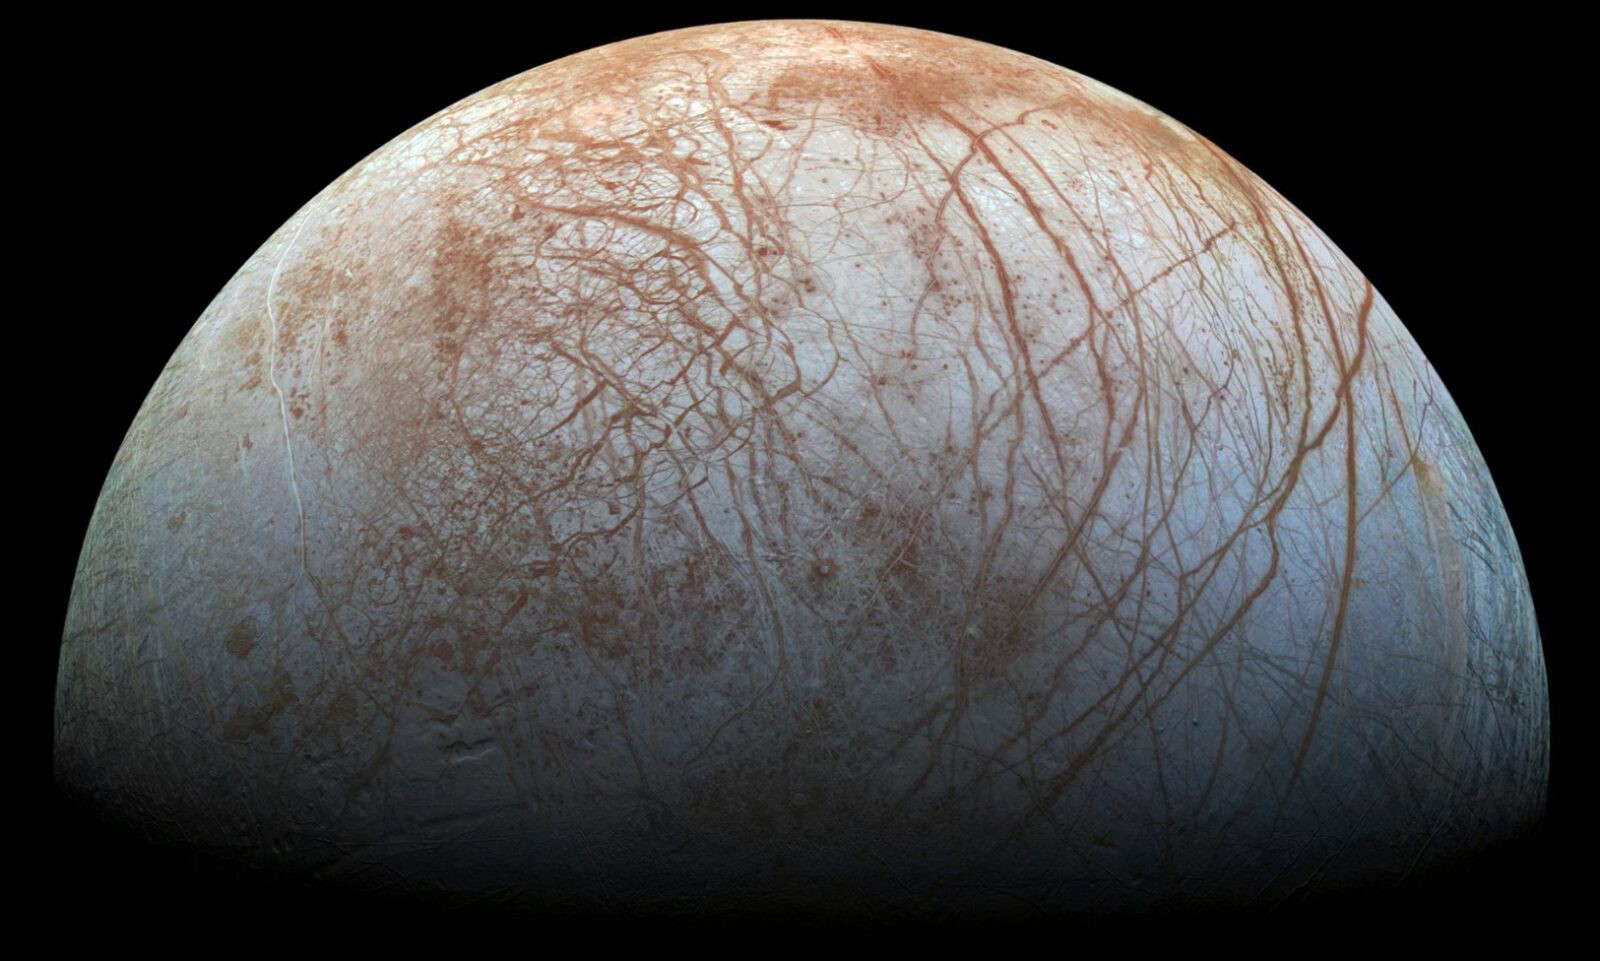 Europa jednak nie sprzyja życiu? Sonda Juno z pesymistycznymi informacjami z okolic Jowisza